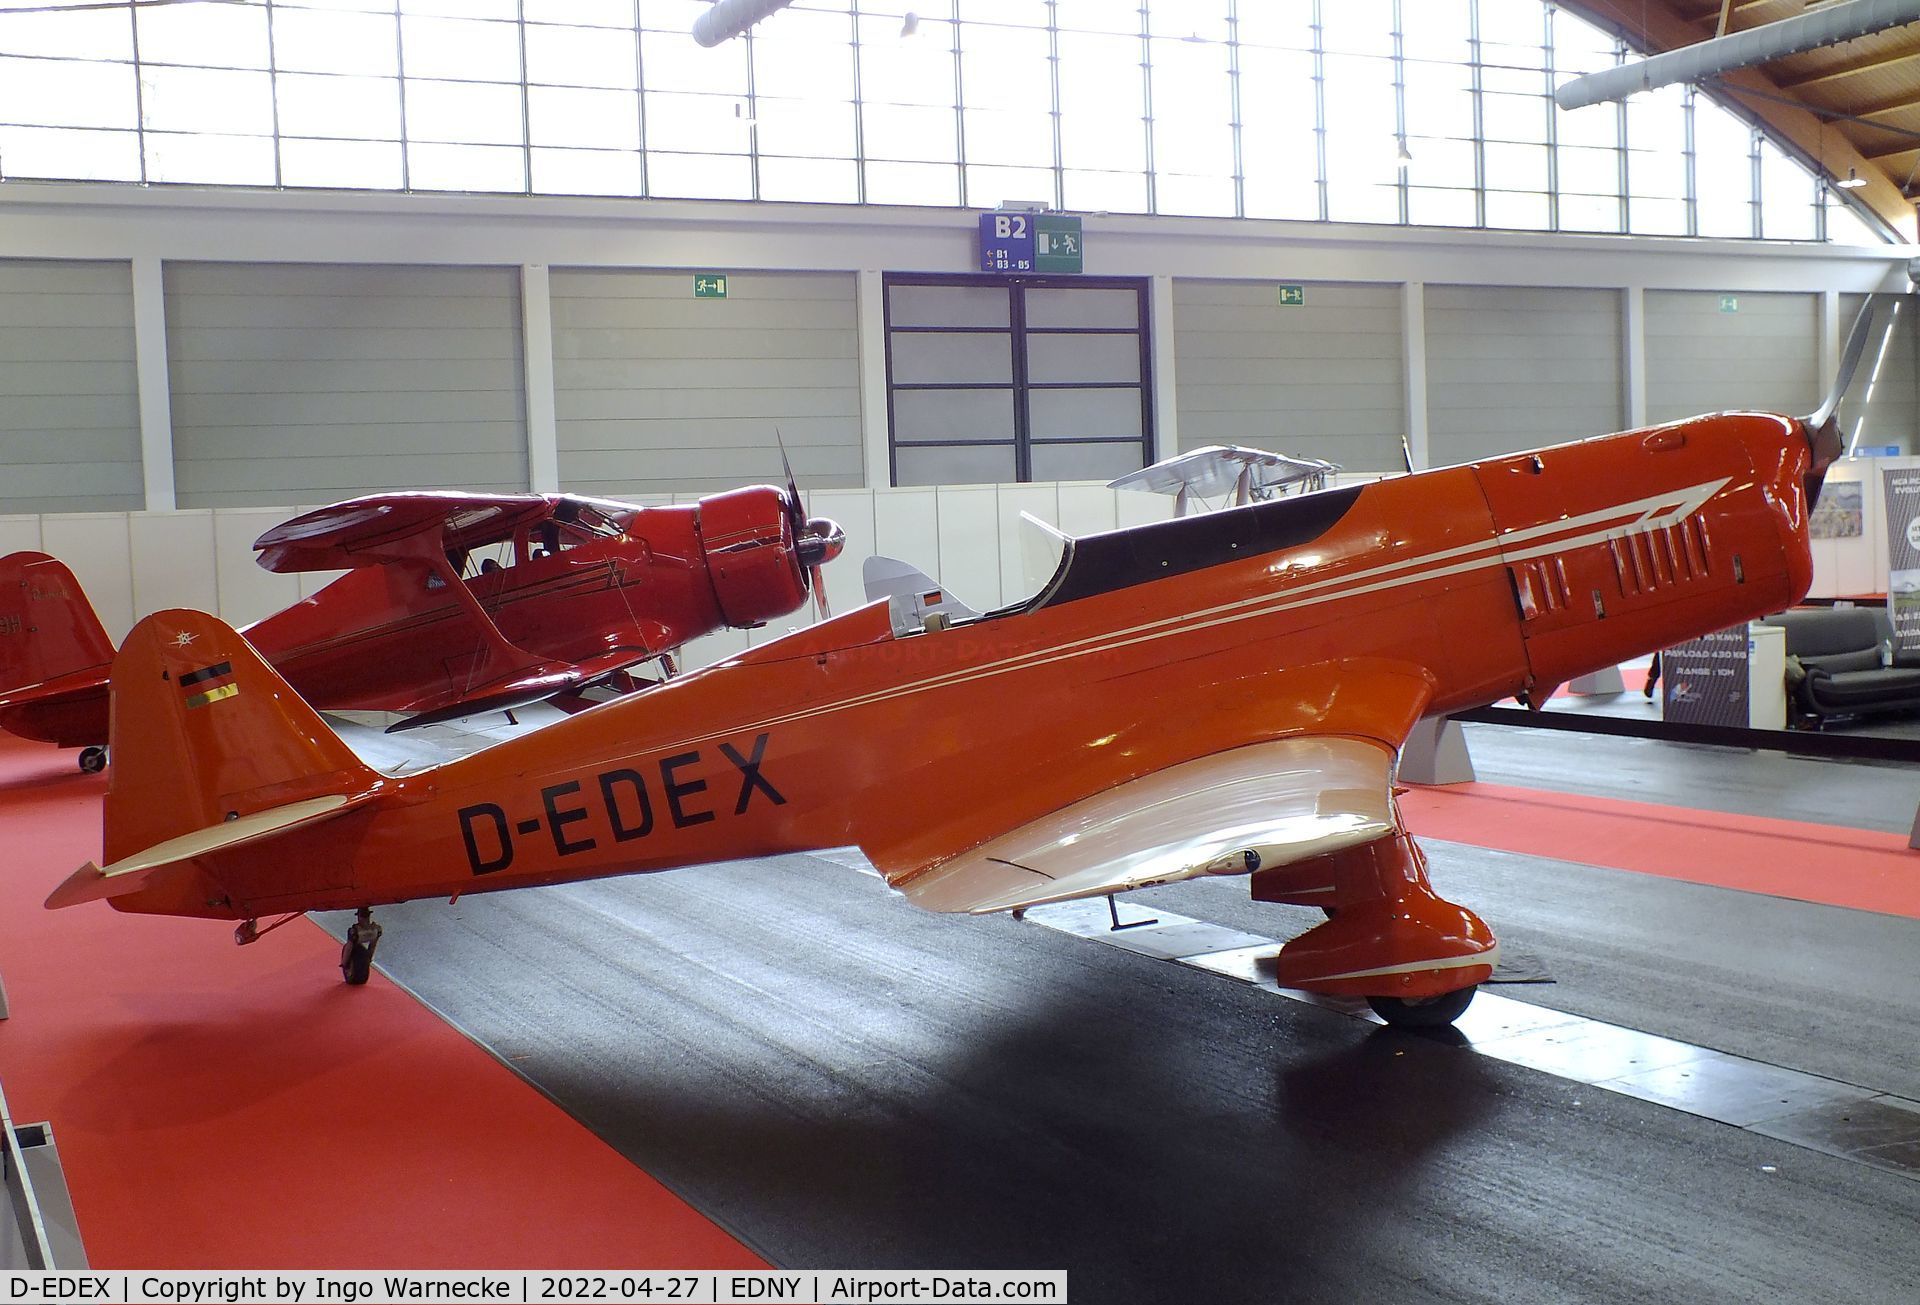 D-EDEX, 1940 Klemm Kl-35 Spezial C/N 1916, Klemm Kl 35 Spezial at the AERO 2022, Friedrichshafen